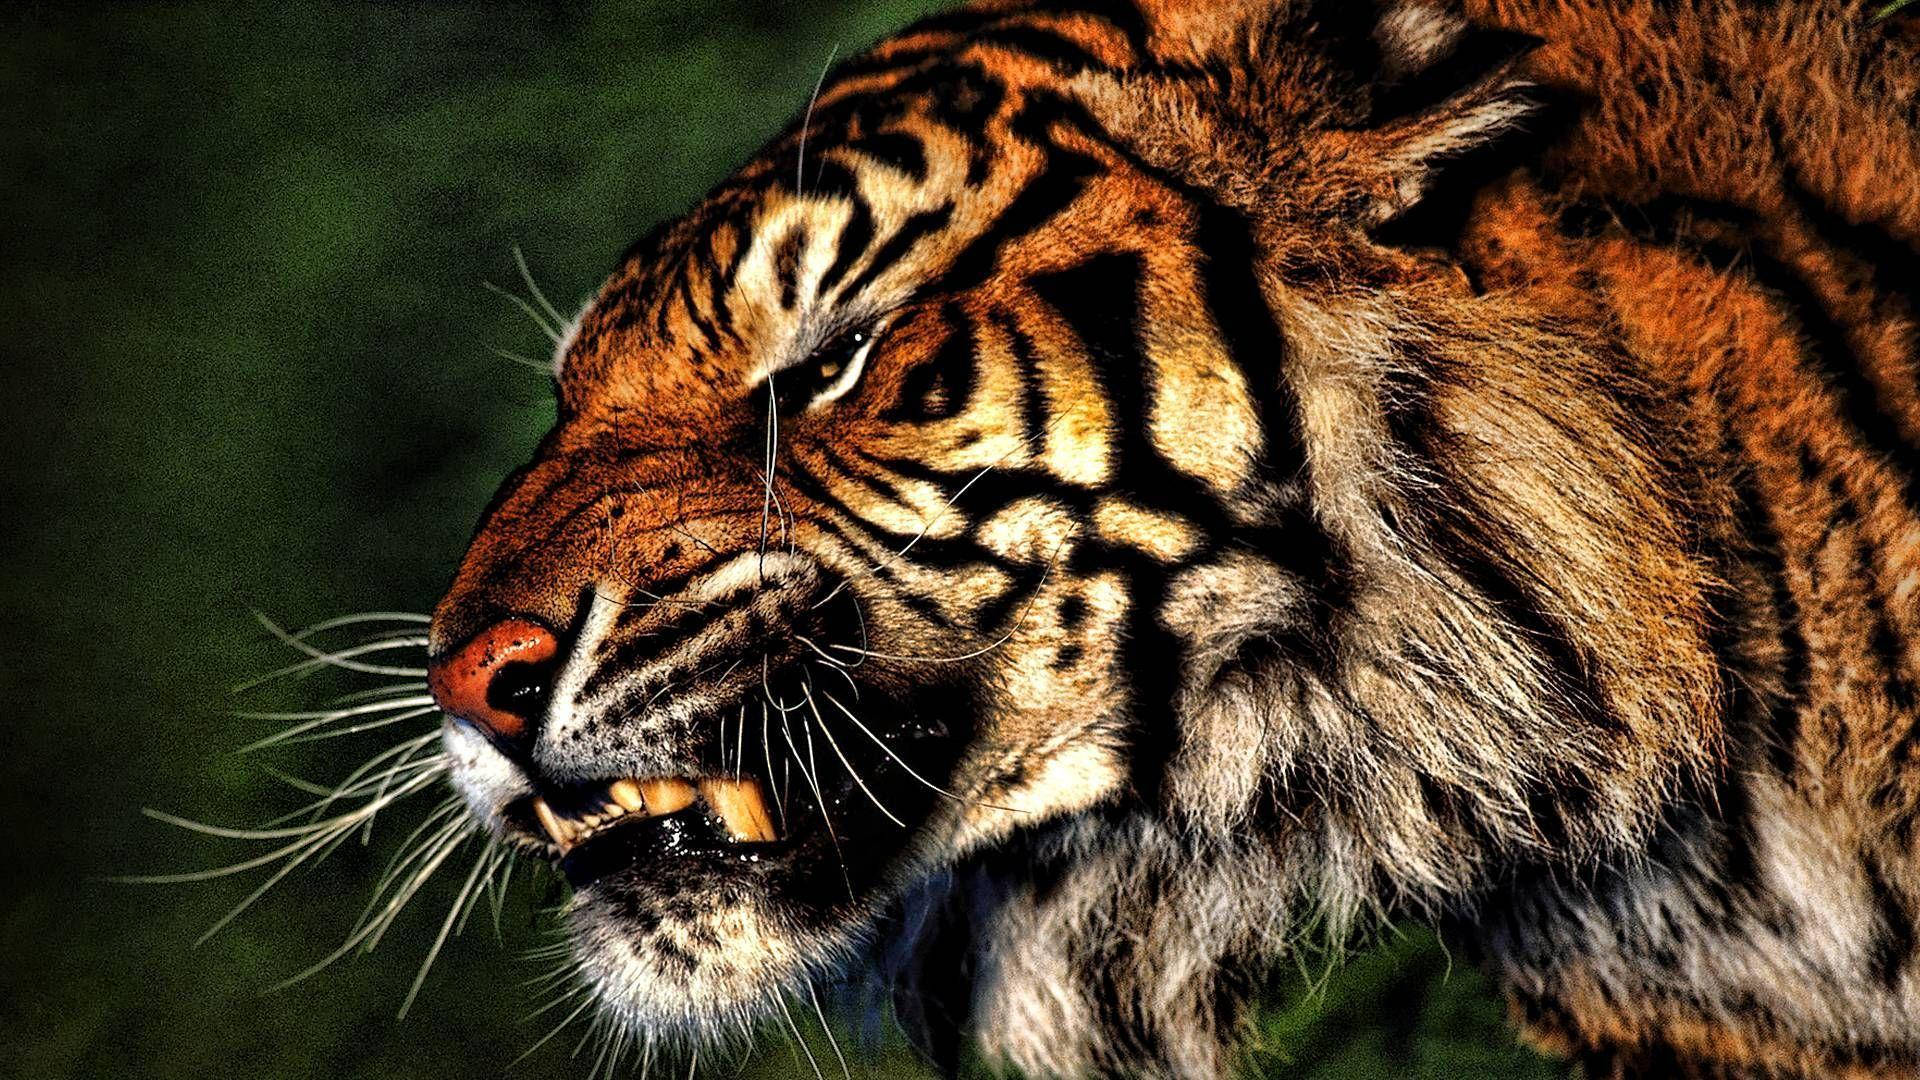 Angry Tiger Close Up Wallpaper